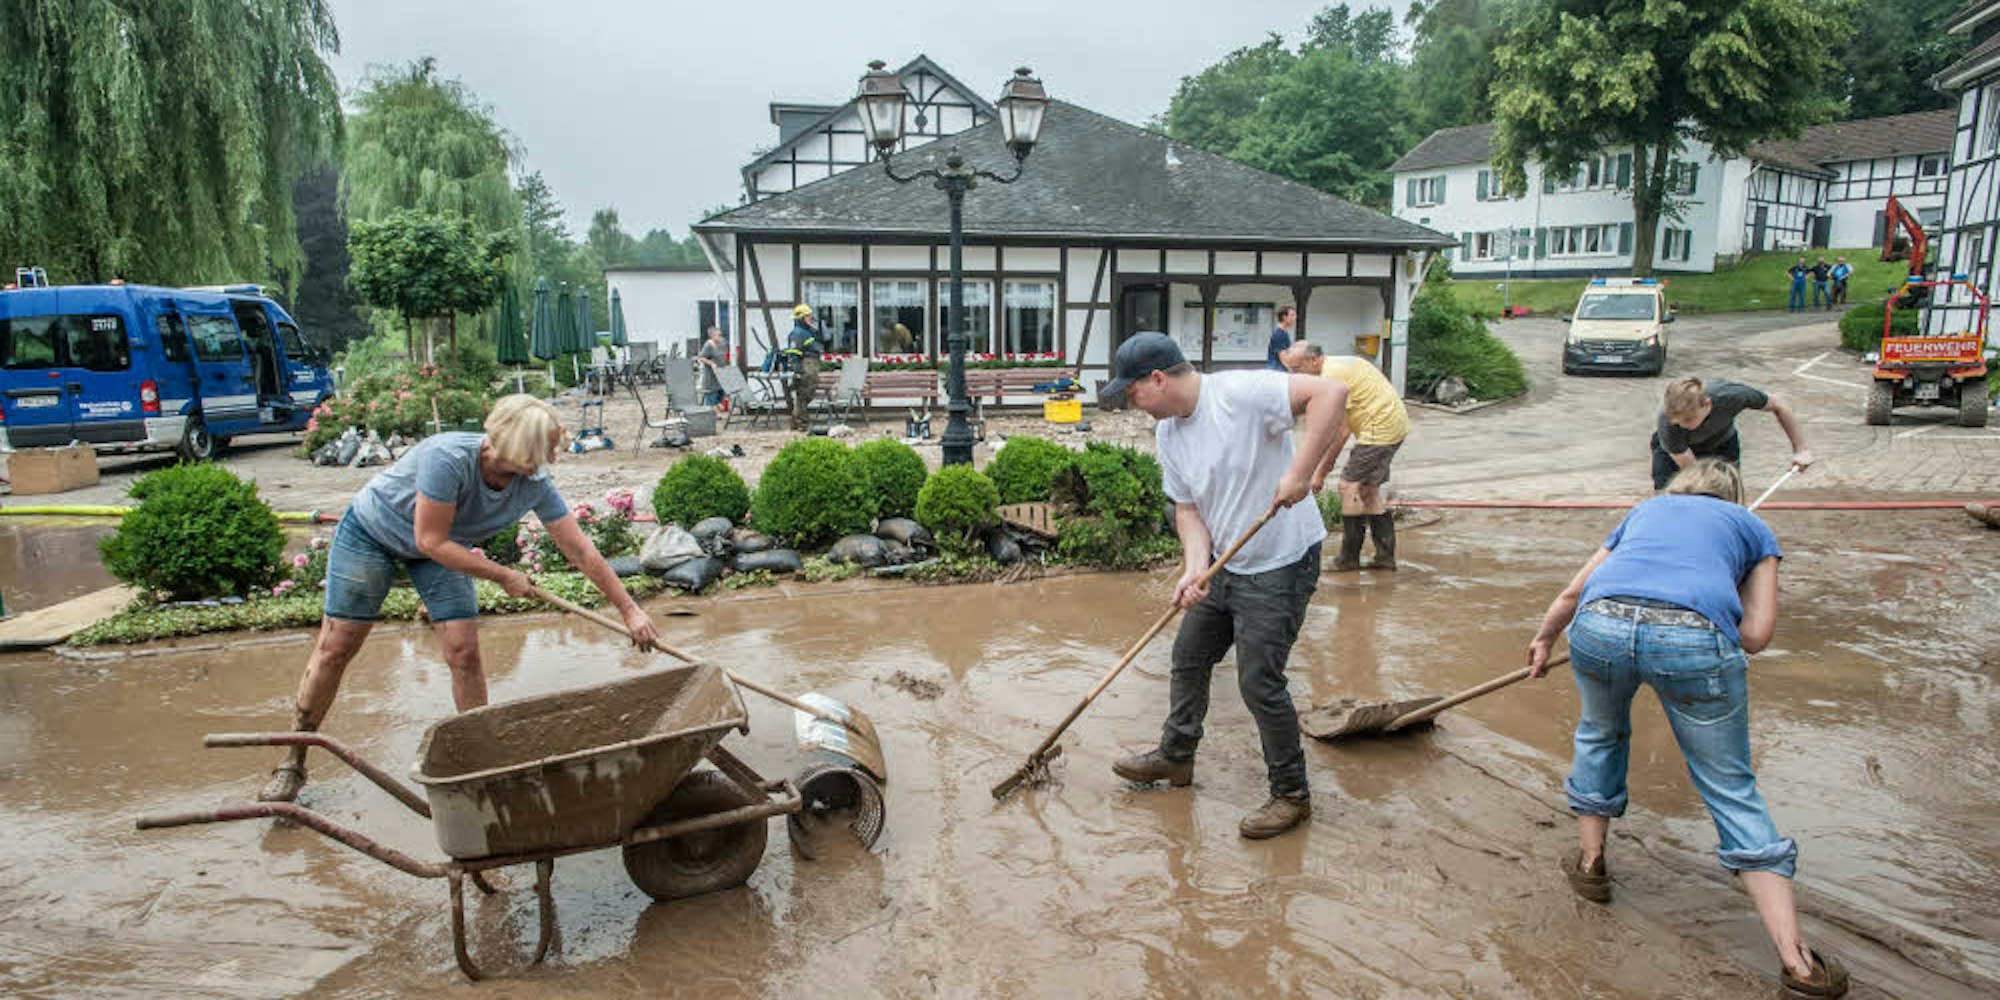 Schlammwüste im Seniorendorf: In Weltersbach hat die Regenflut Häuser, Autos und Brücken zerstört.